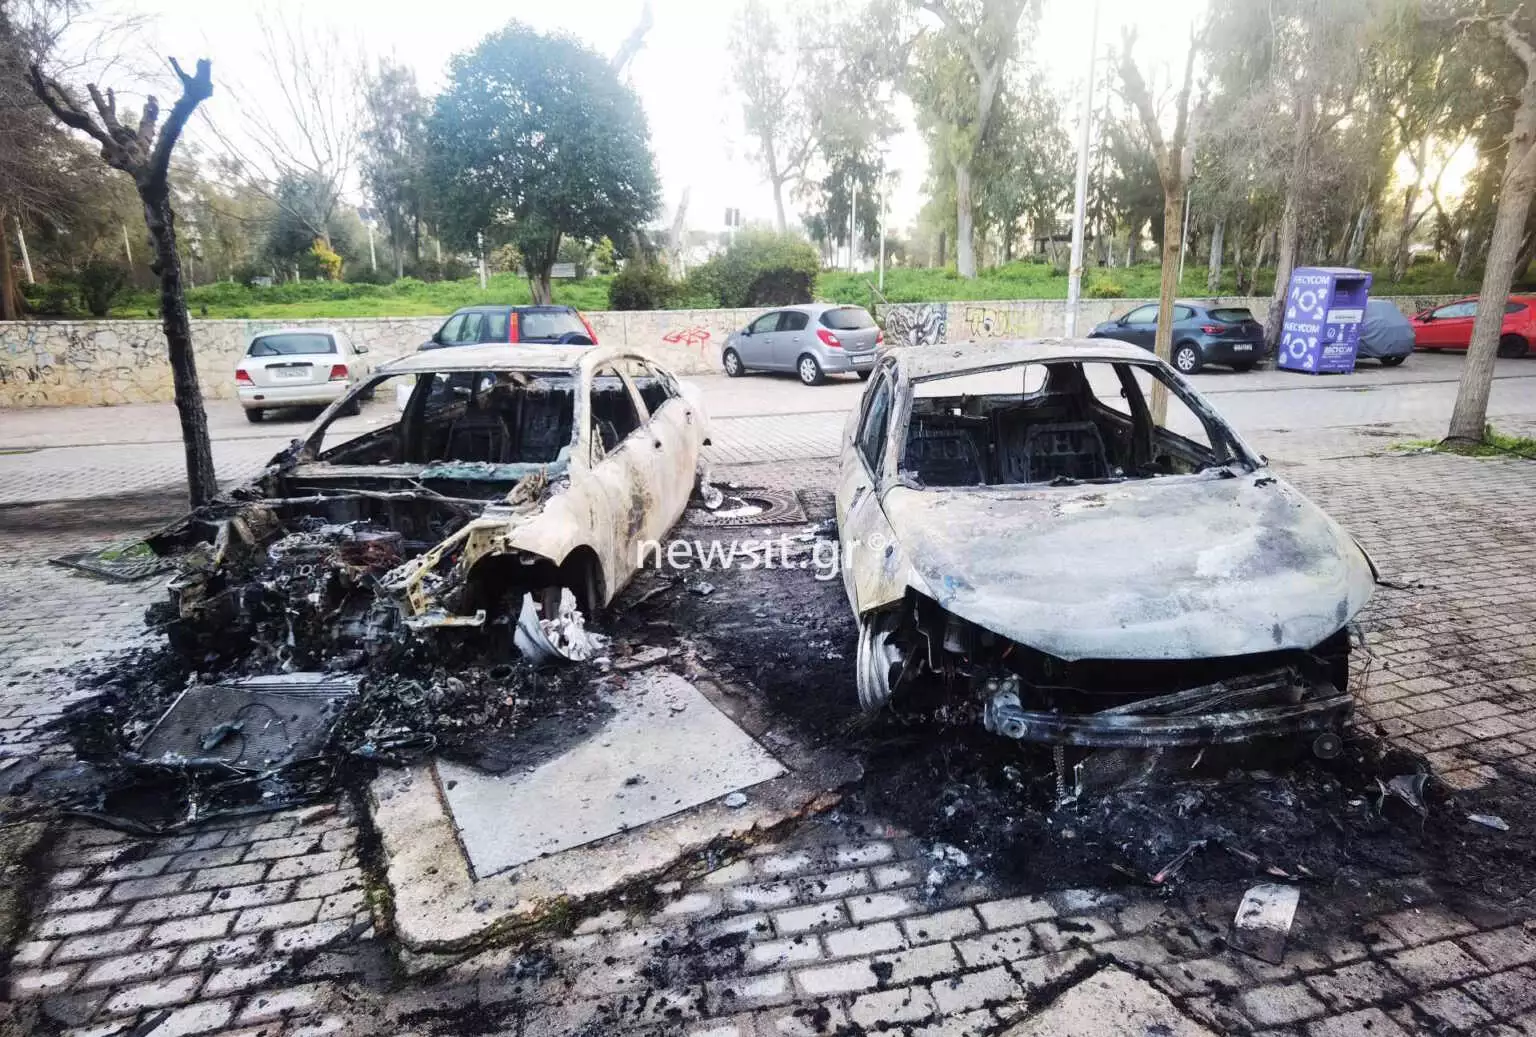 Πανεπιστημιούπολη: Σοβαρά επεισόδια με μολότοφ και φωτοβολίδες ευθείας βολής – Κάηκαν αυτοκίνητα (VIDEO)